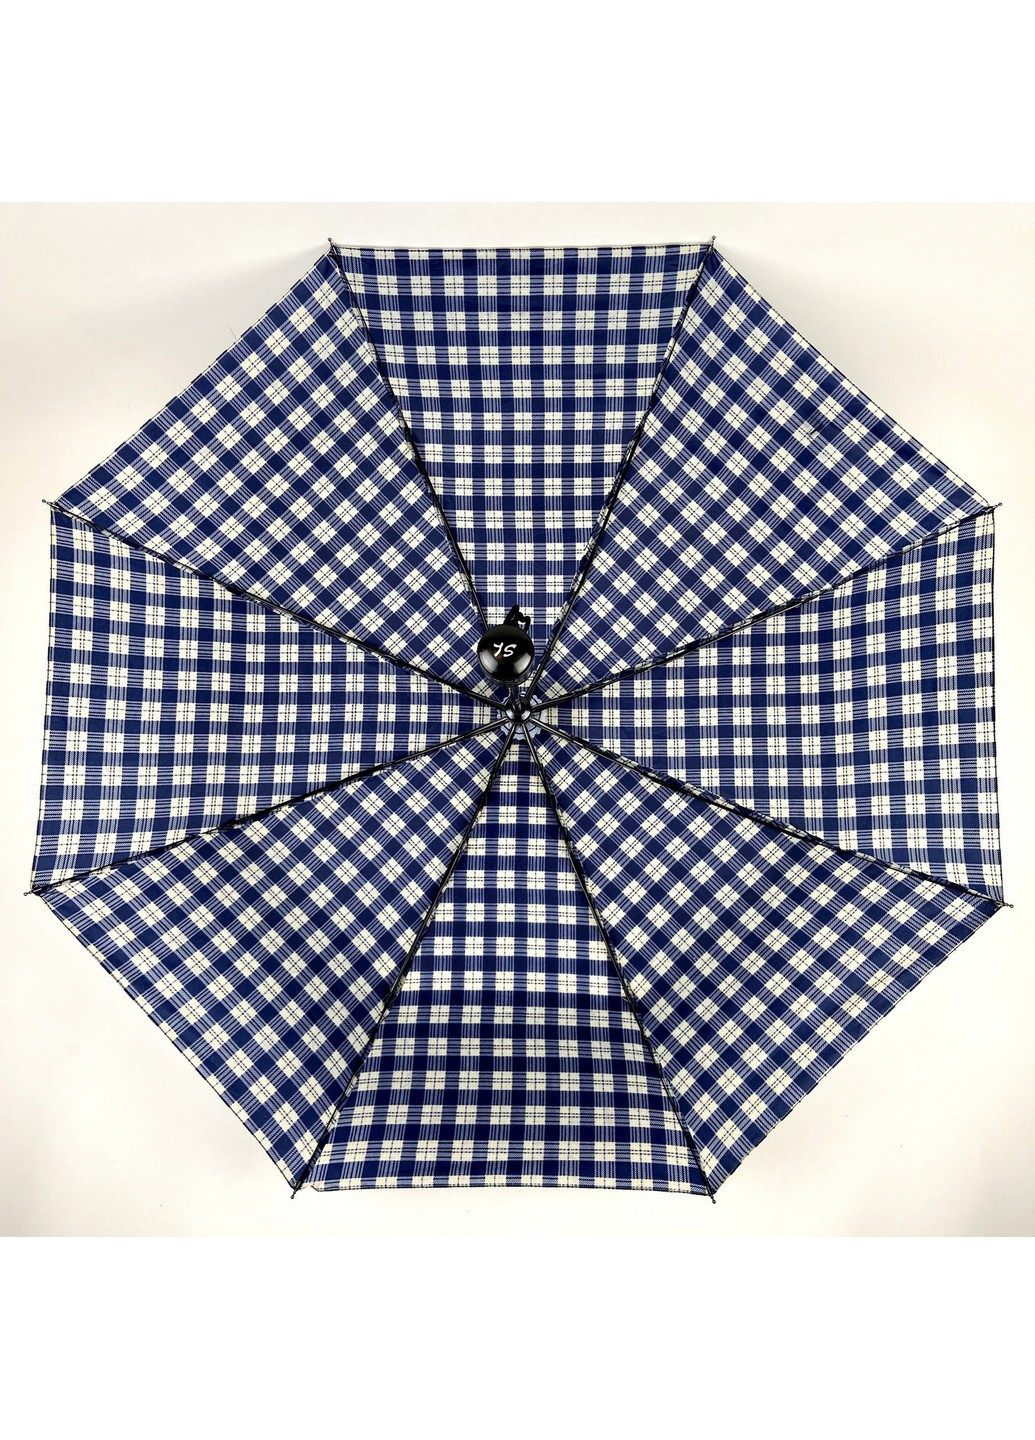 Женский зонт полуавтомат 98 см SL (258638168)